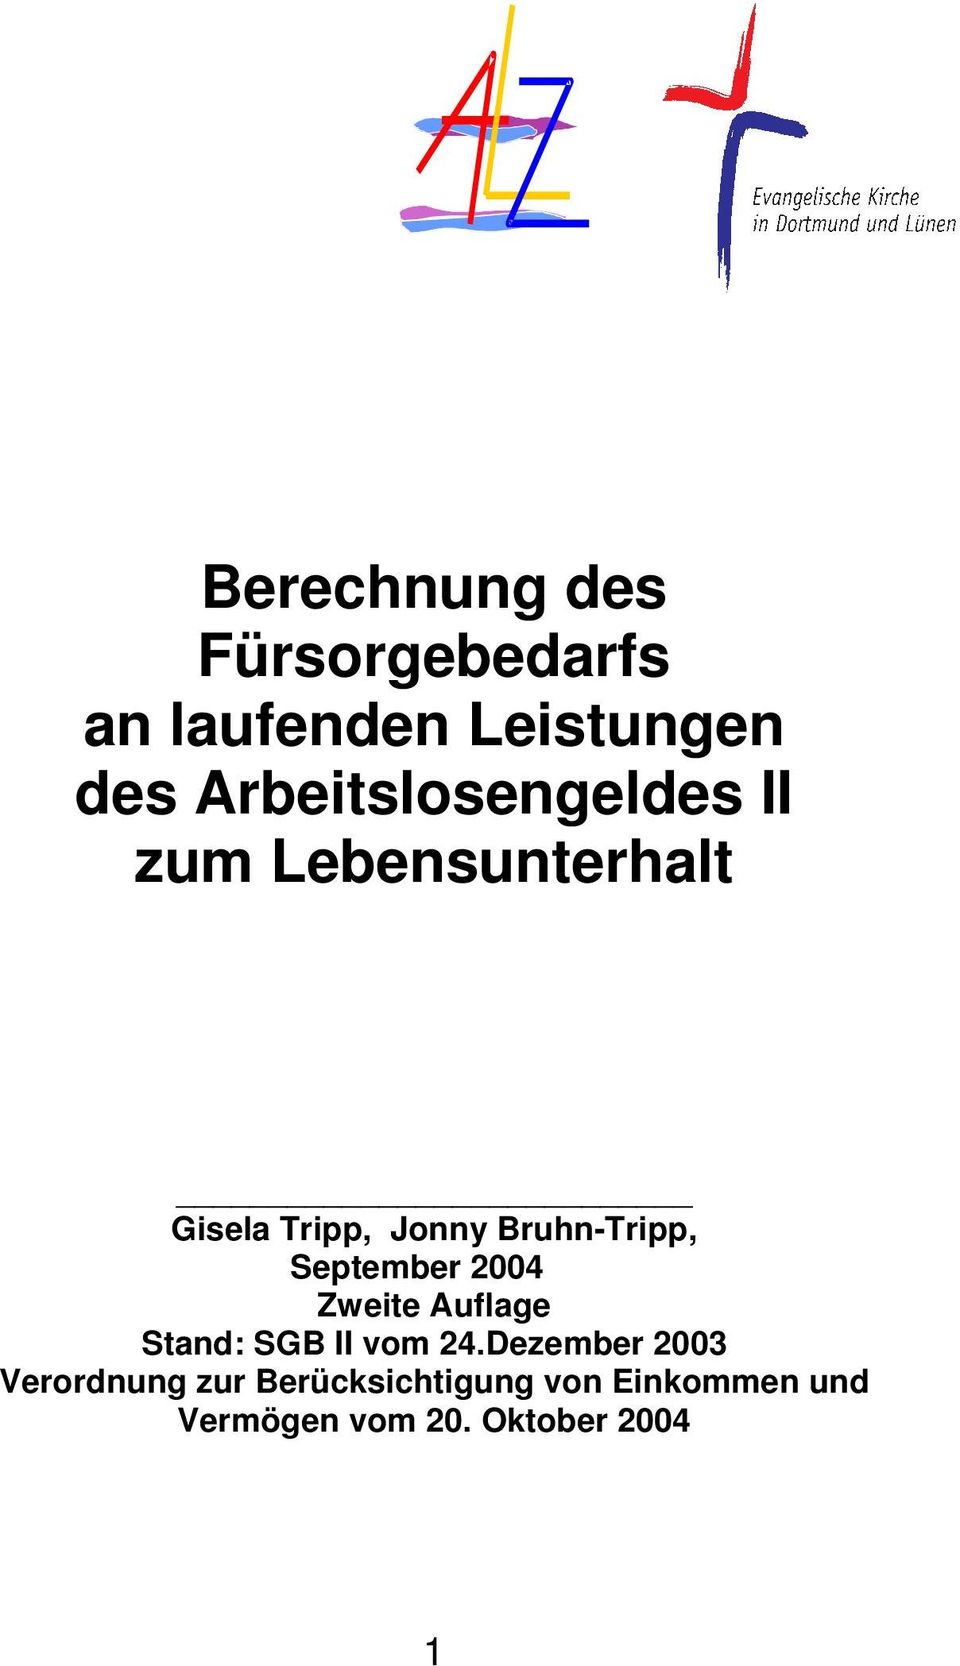 Bruhn-Tripp, September 2004 Zweite Auflage Stand: SGB II vom 24.